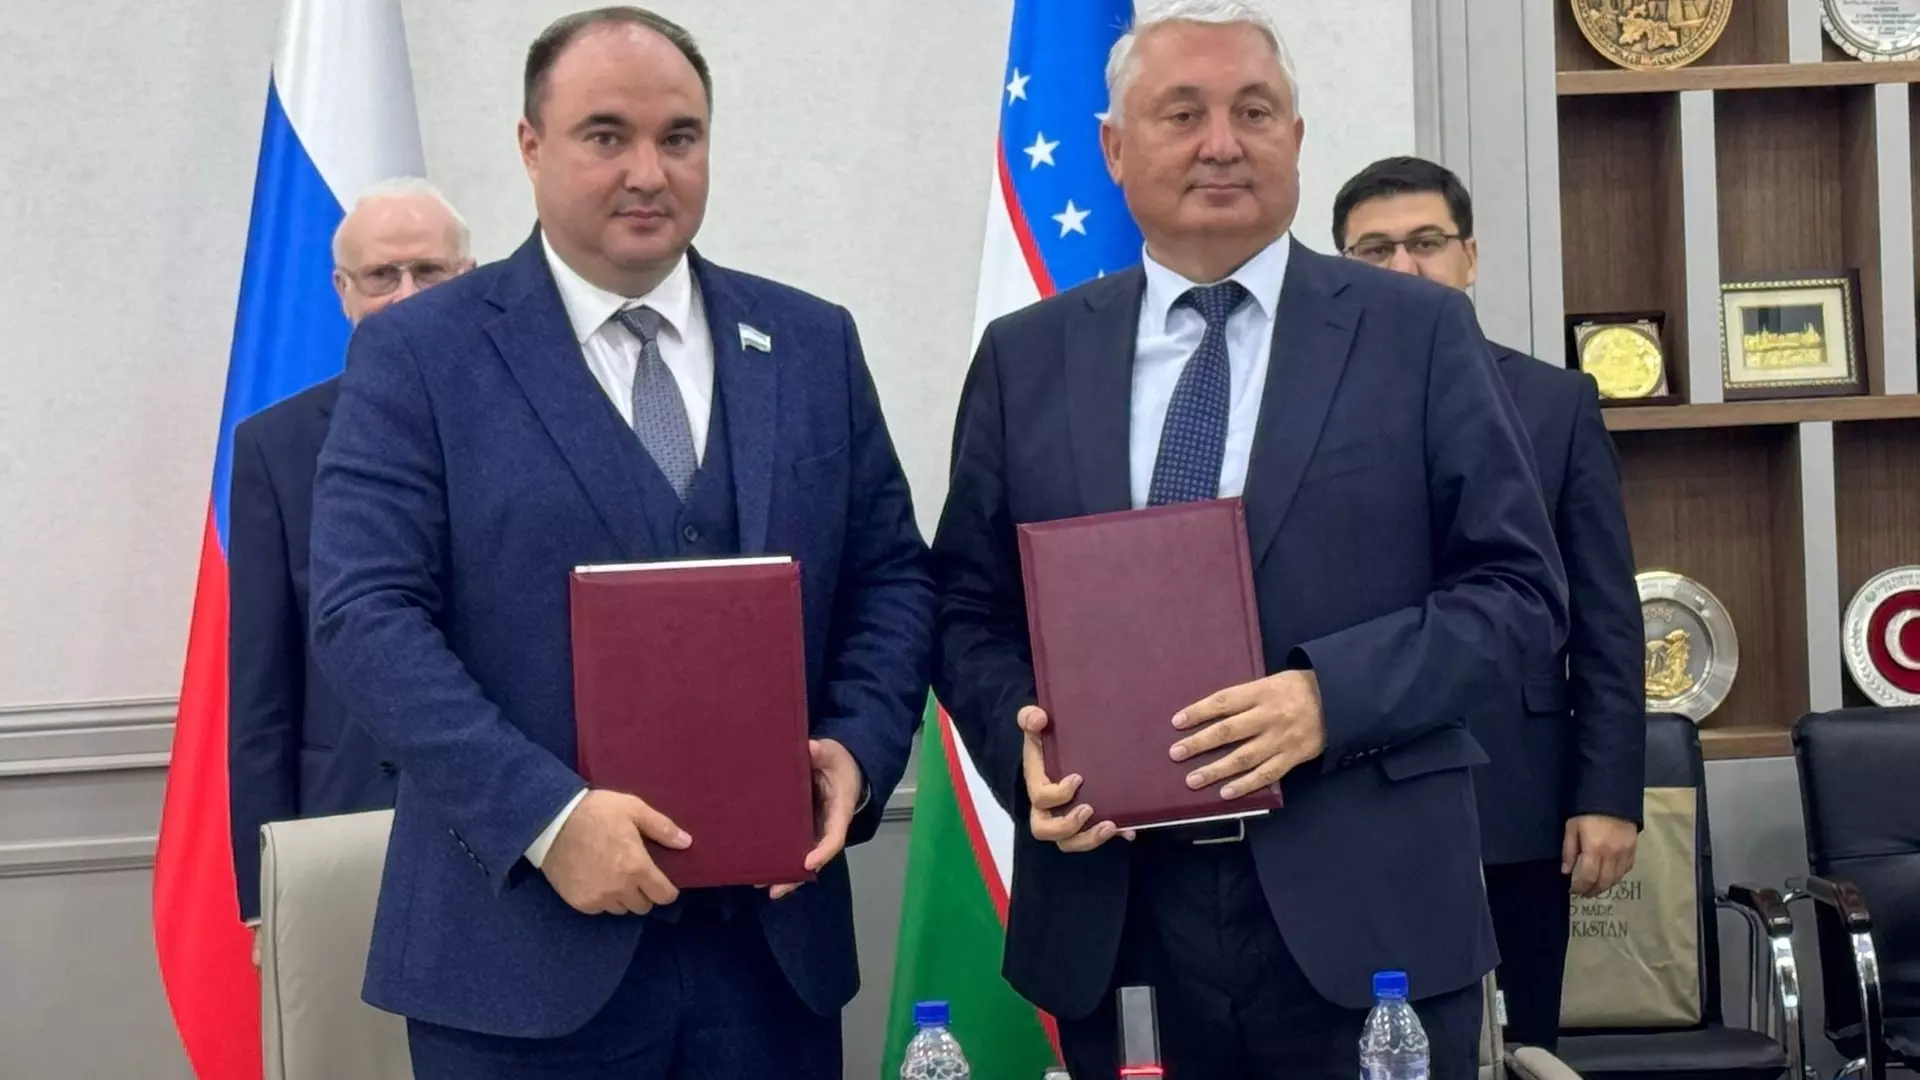 ТПП Башкортостана и Узбекистана подписали соглашение о сотрудничестве